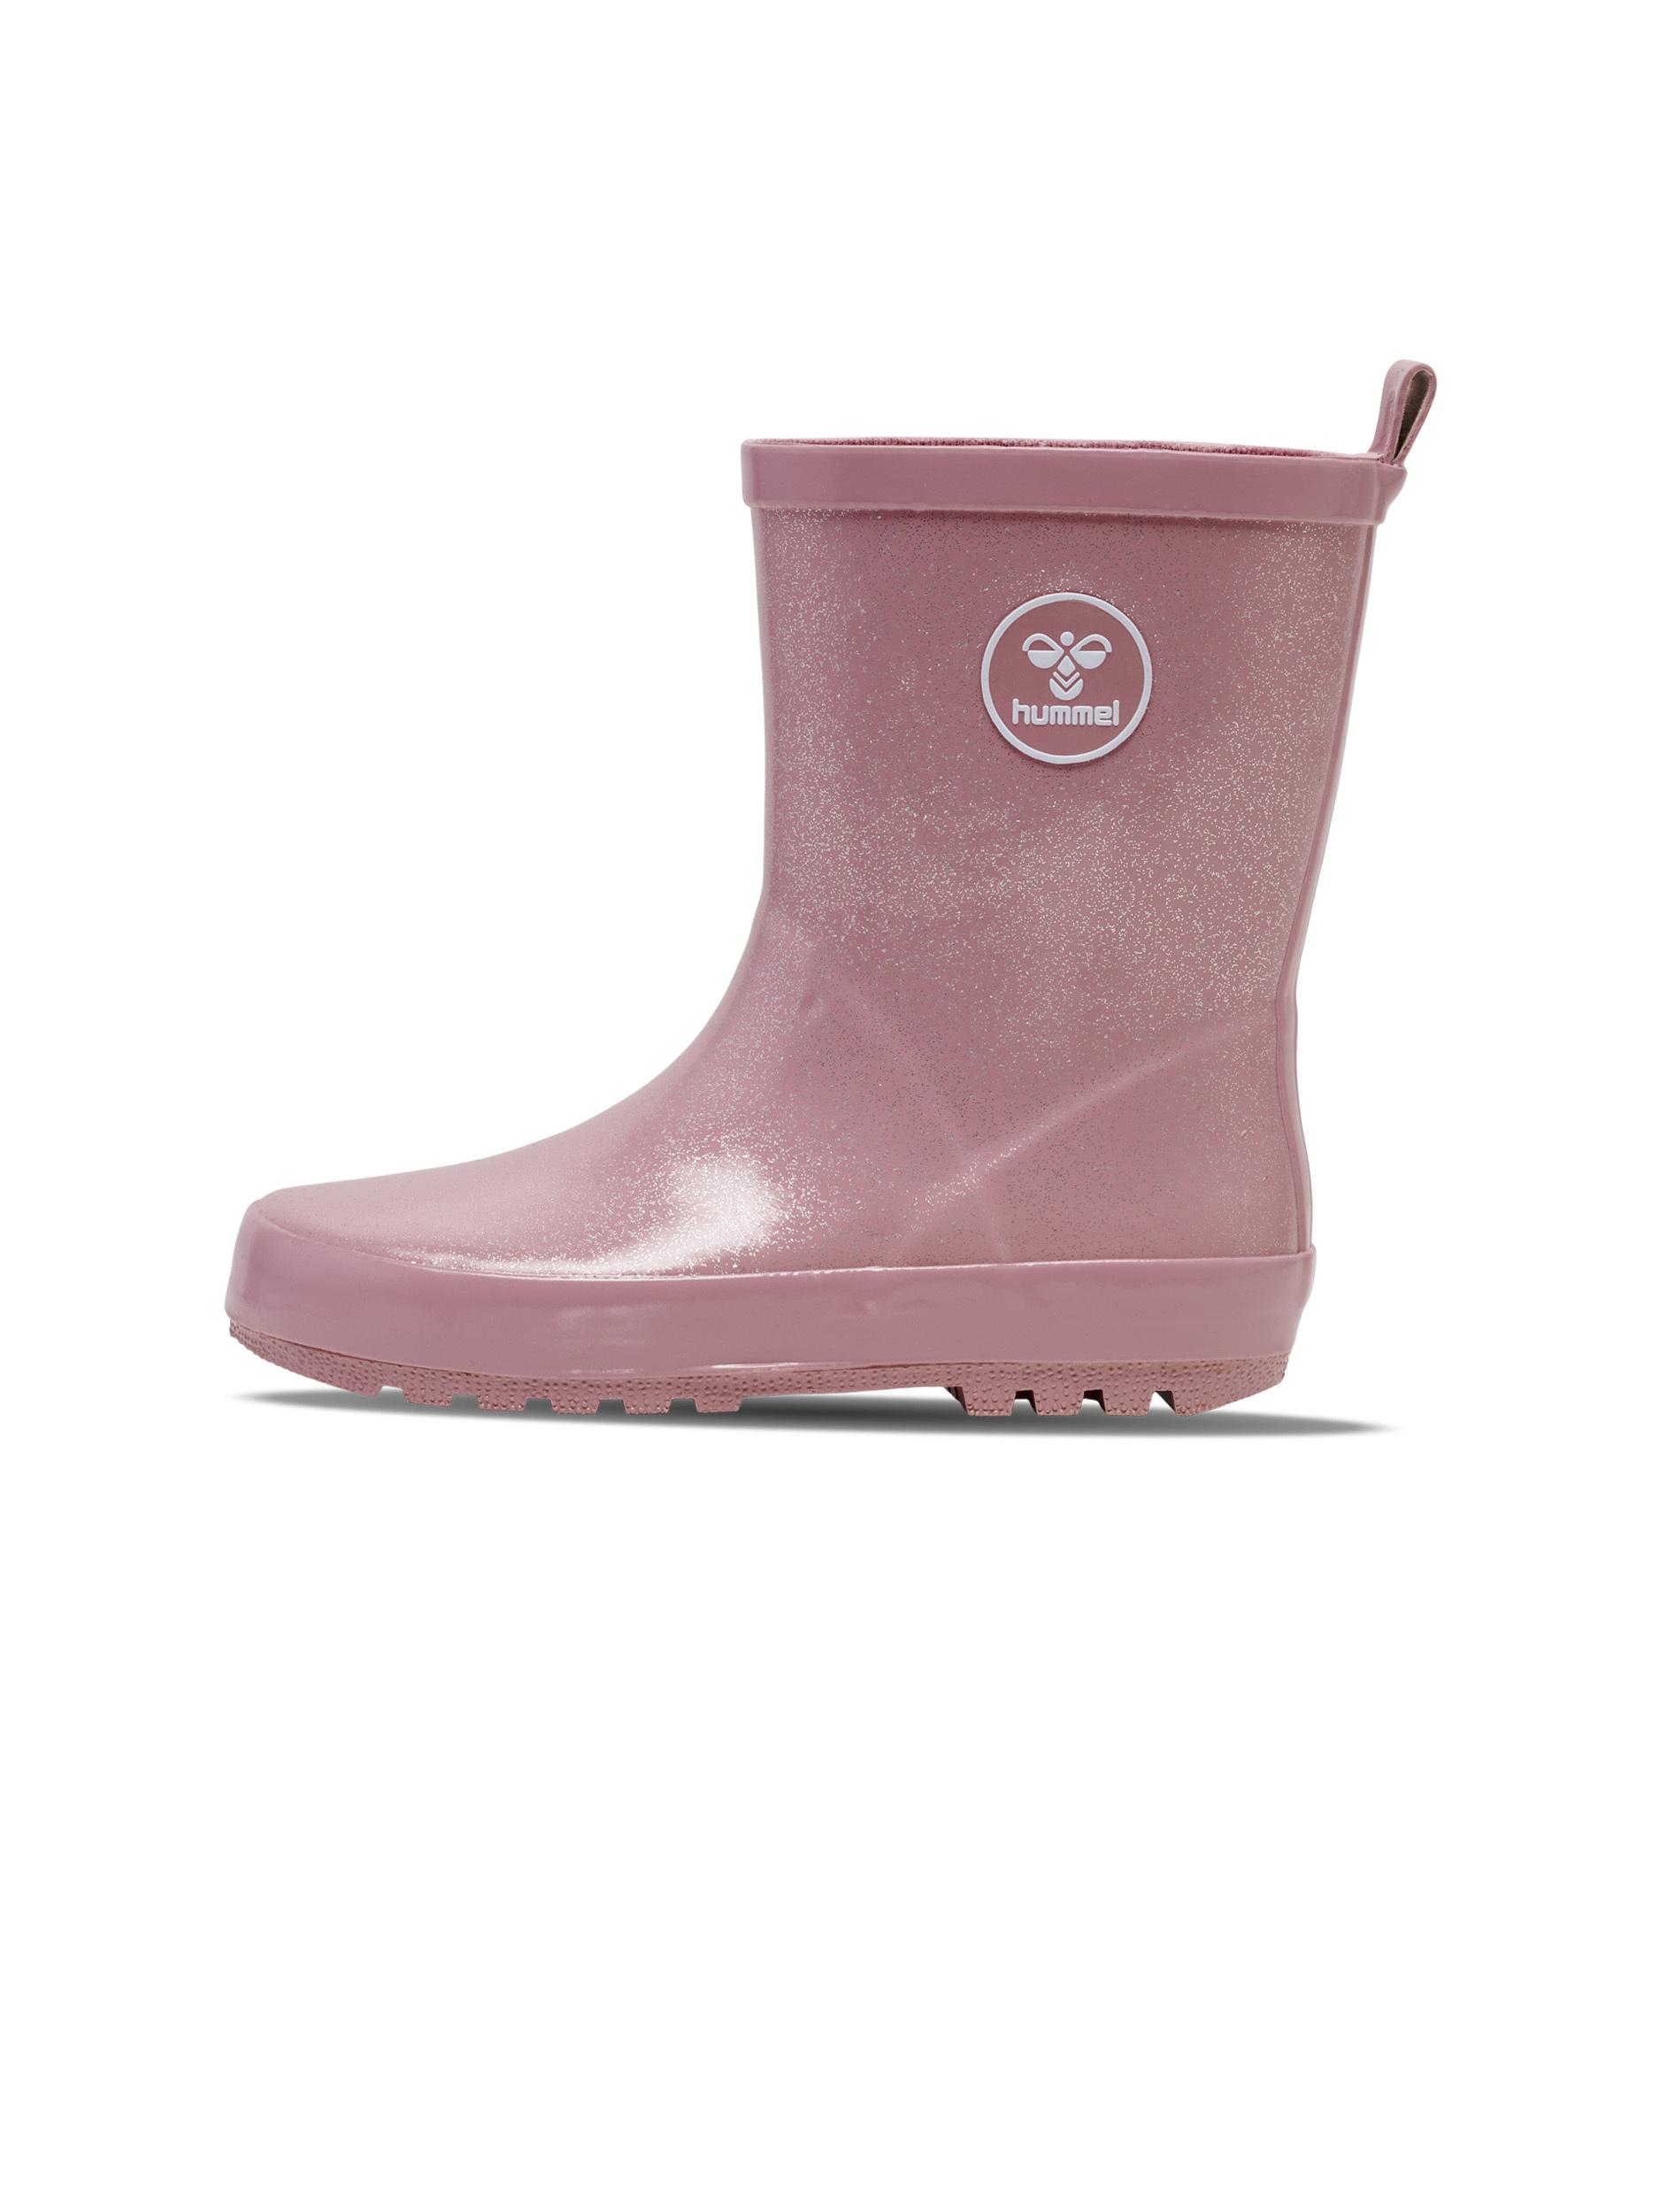 & im Boots SportScheck Kinder für Stiefel kaufen von Online rosa Shop in